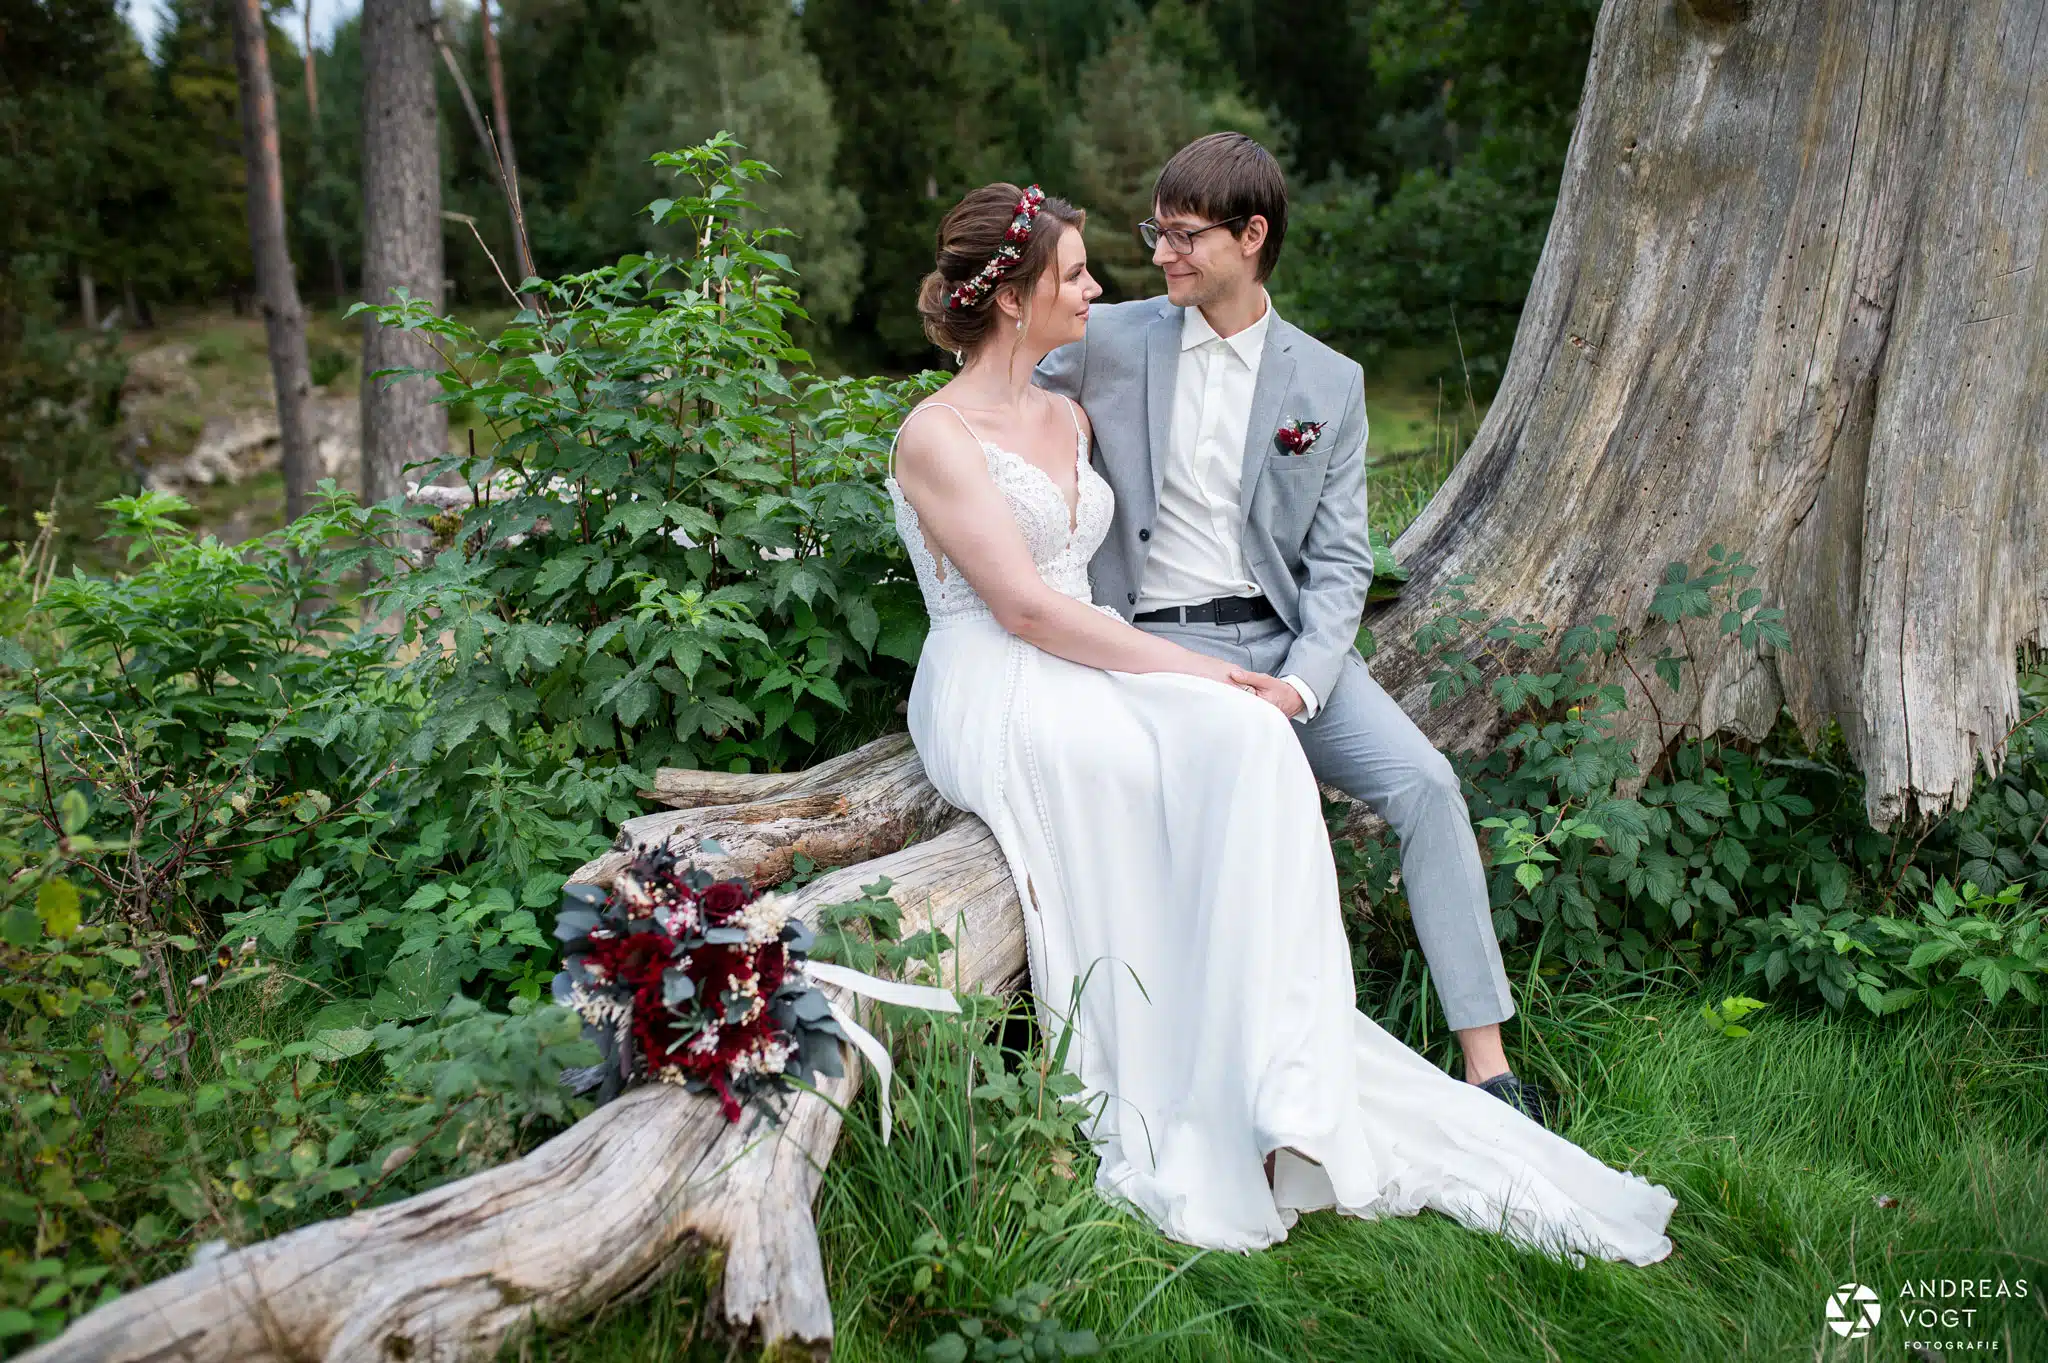 Jasmin und Matze - After-Wedding Fotoshooting mit Andreas Vogt Fotograf aus Aalen